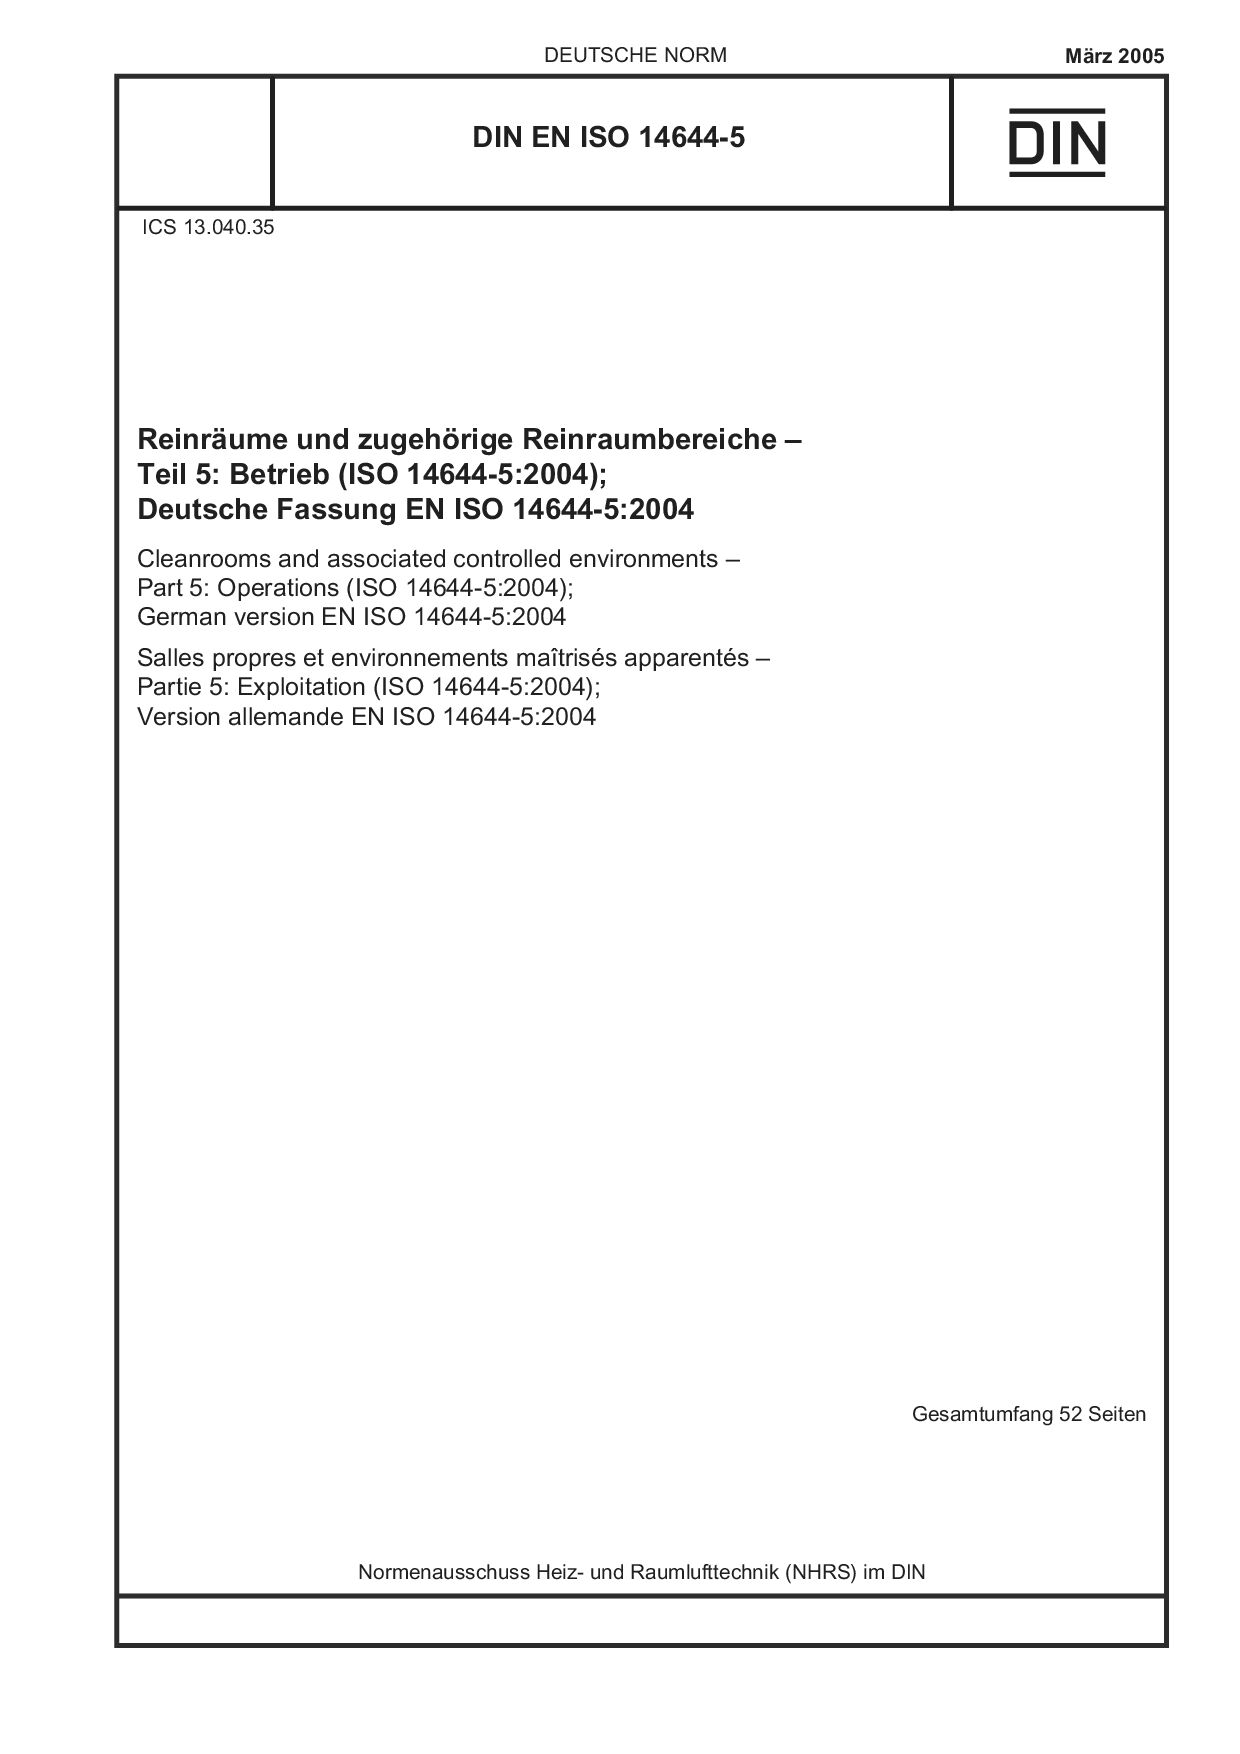 DIN EN ISO 14644-5:2005封面图